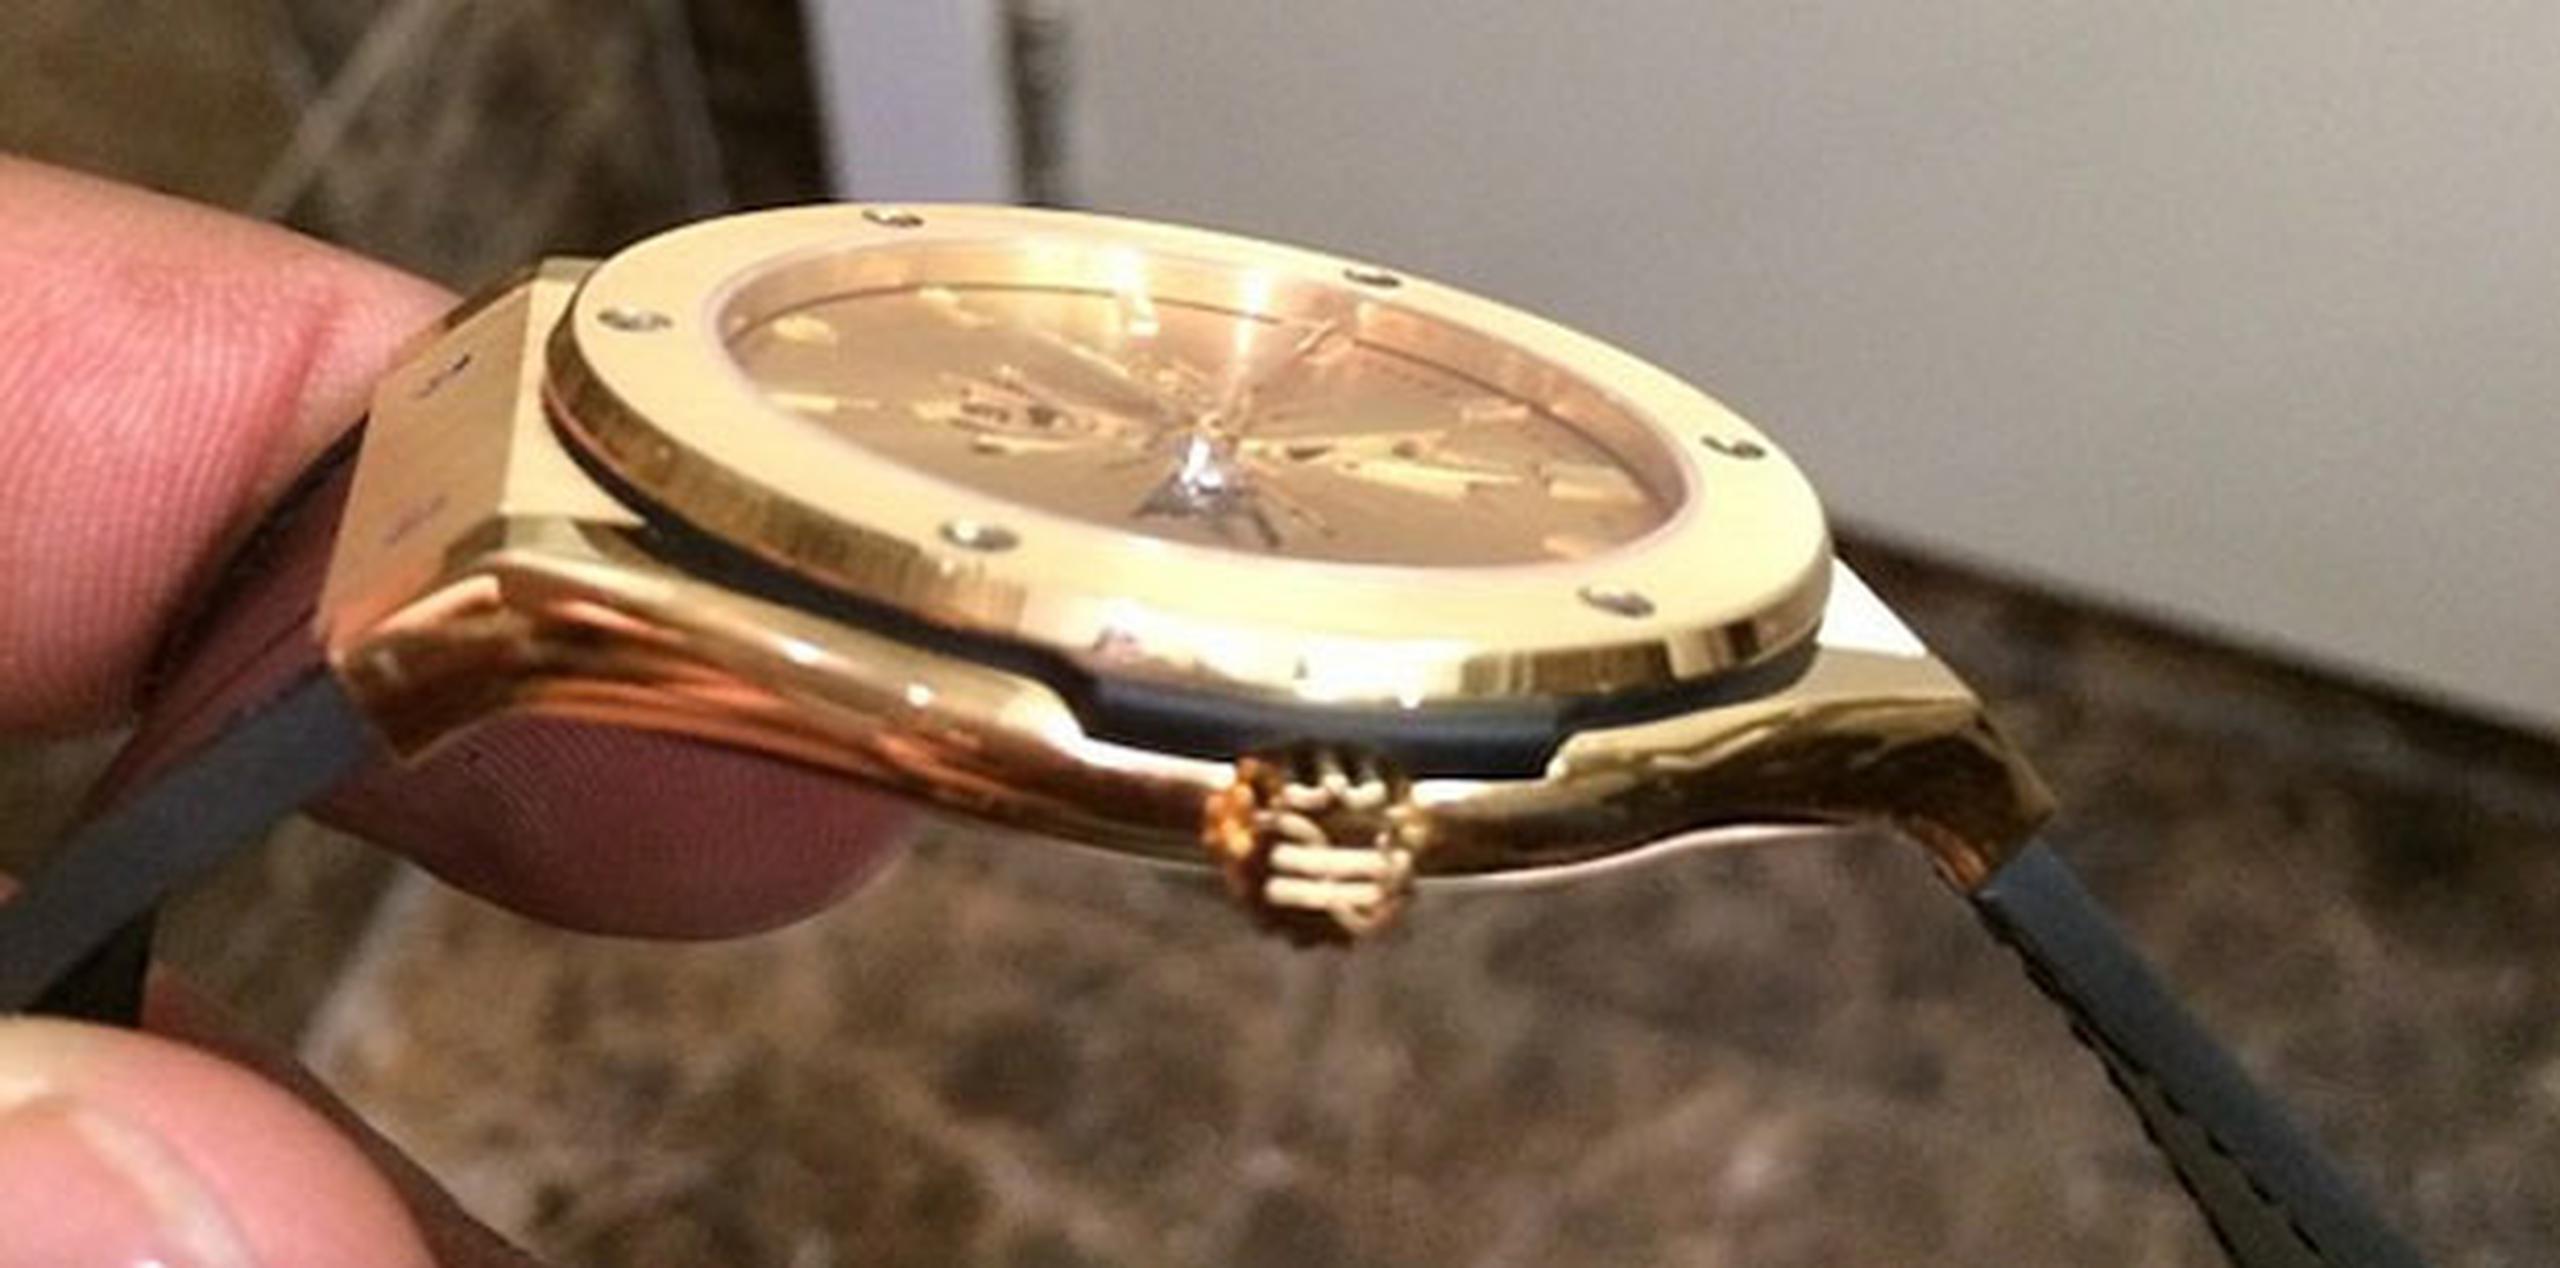 El pelotero recibió un reloj Shawn Carter Classic Fusion edición limitada, hecho por Hublot. (Instagram)